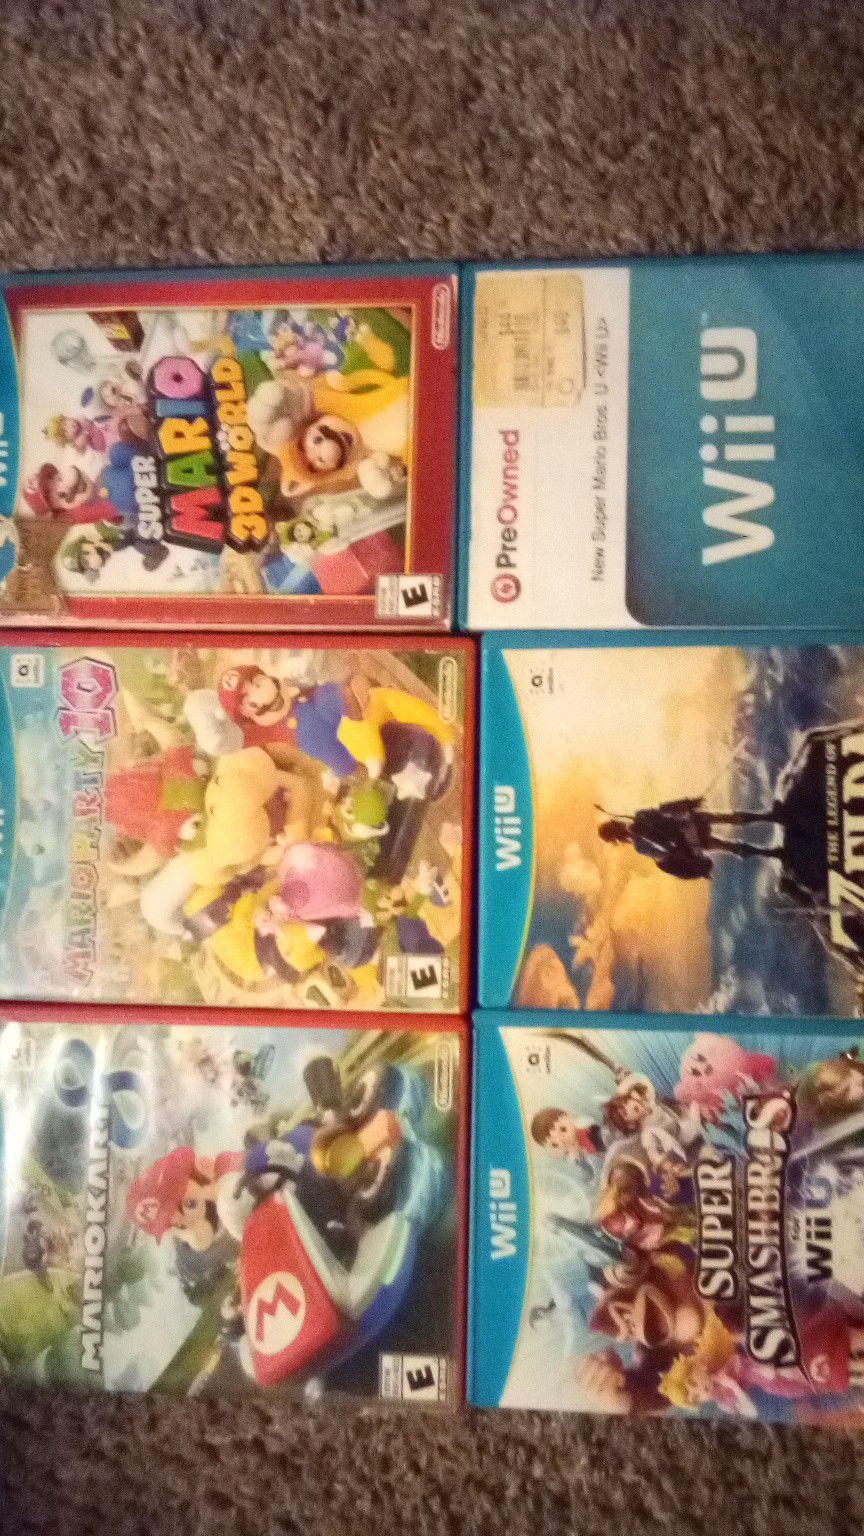 Wii U games. Super smash Bros, Zelda Breathe of Wild, Super Mario Bros Wii U, Super Mario Bros 3D World, Mario Kart 8, Mario Party 10